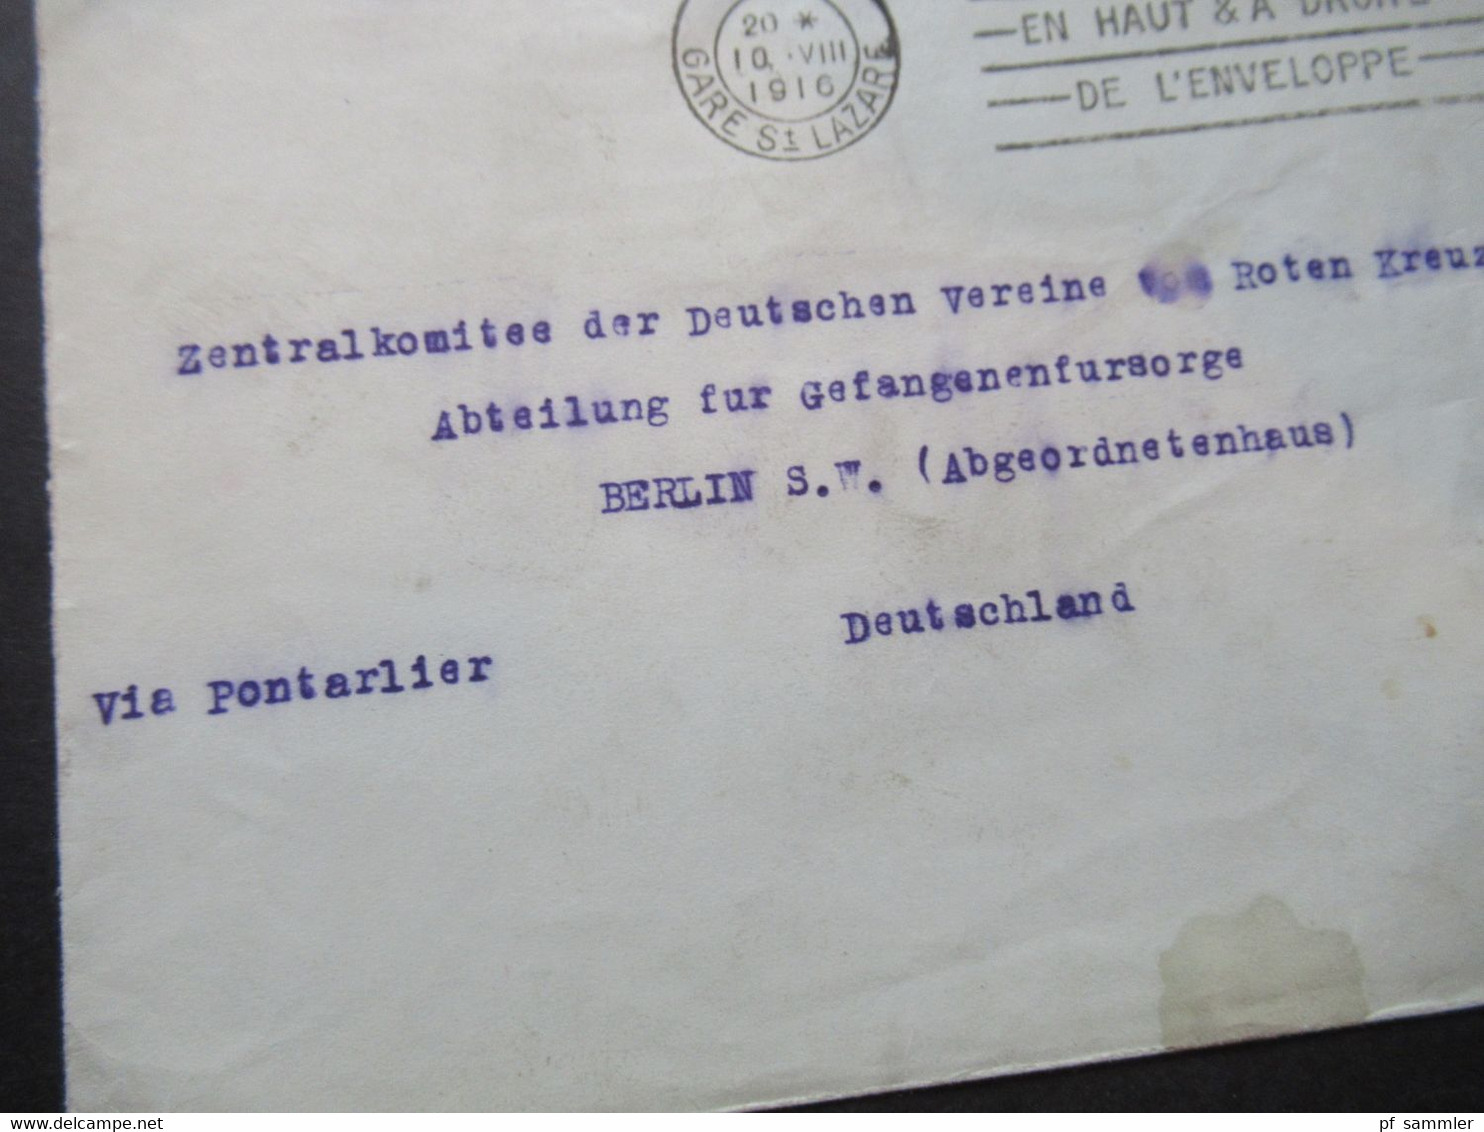 Frankreich 1916 Kriegsgefangenen Sendung Paris Gare St. Lazare Rote Kreuz Gefangenenfürsorge Abgeordnetenhaus Berlin - Covers & Documents